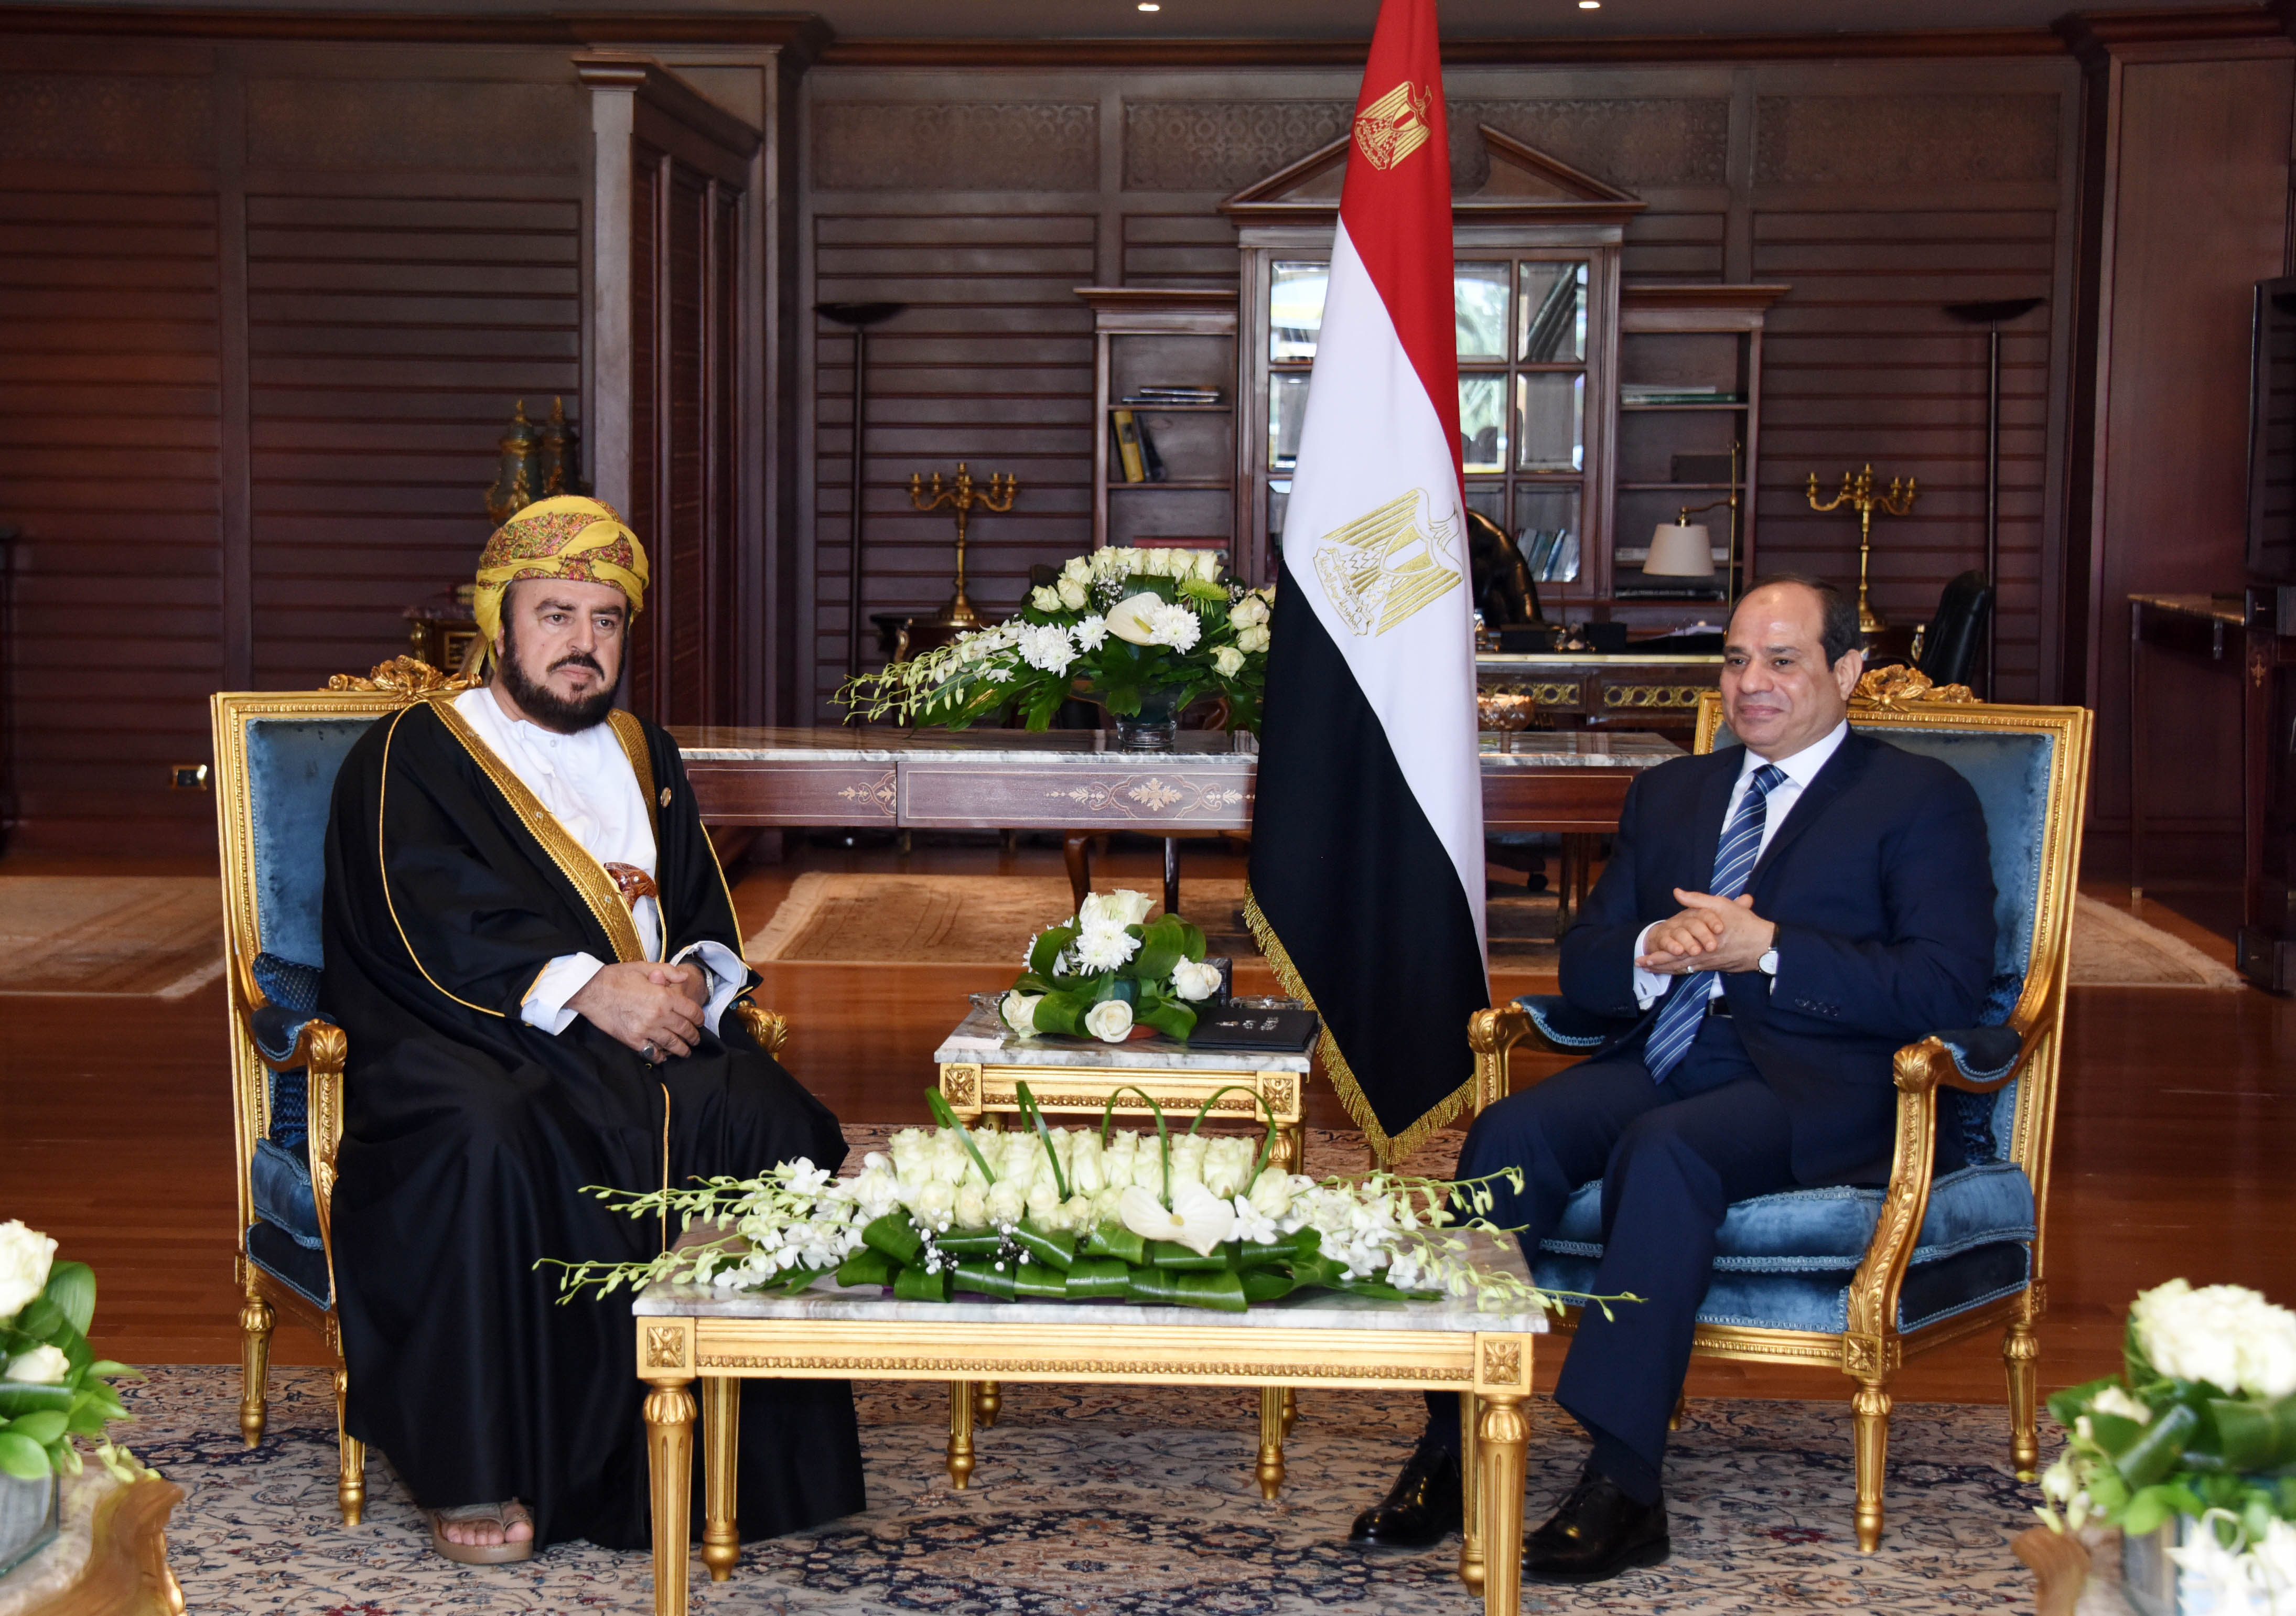 الرئيس المصري يستقبل السيد أسعد بن طارق